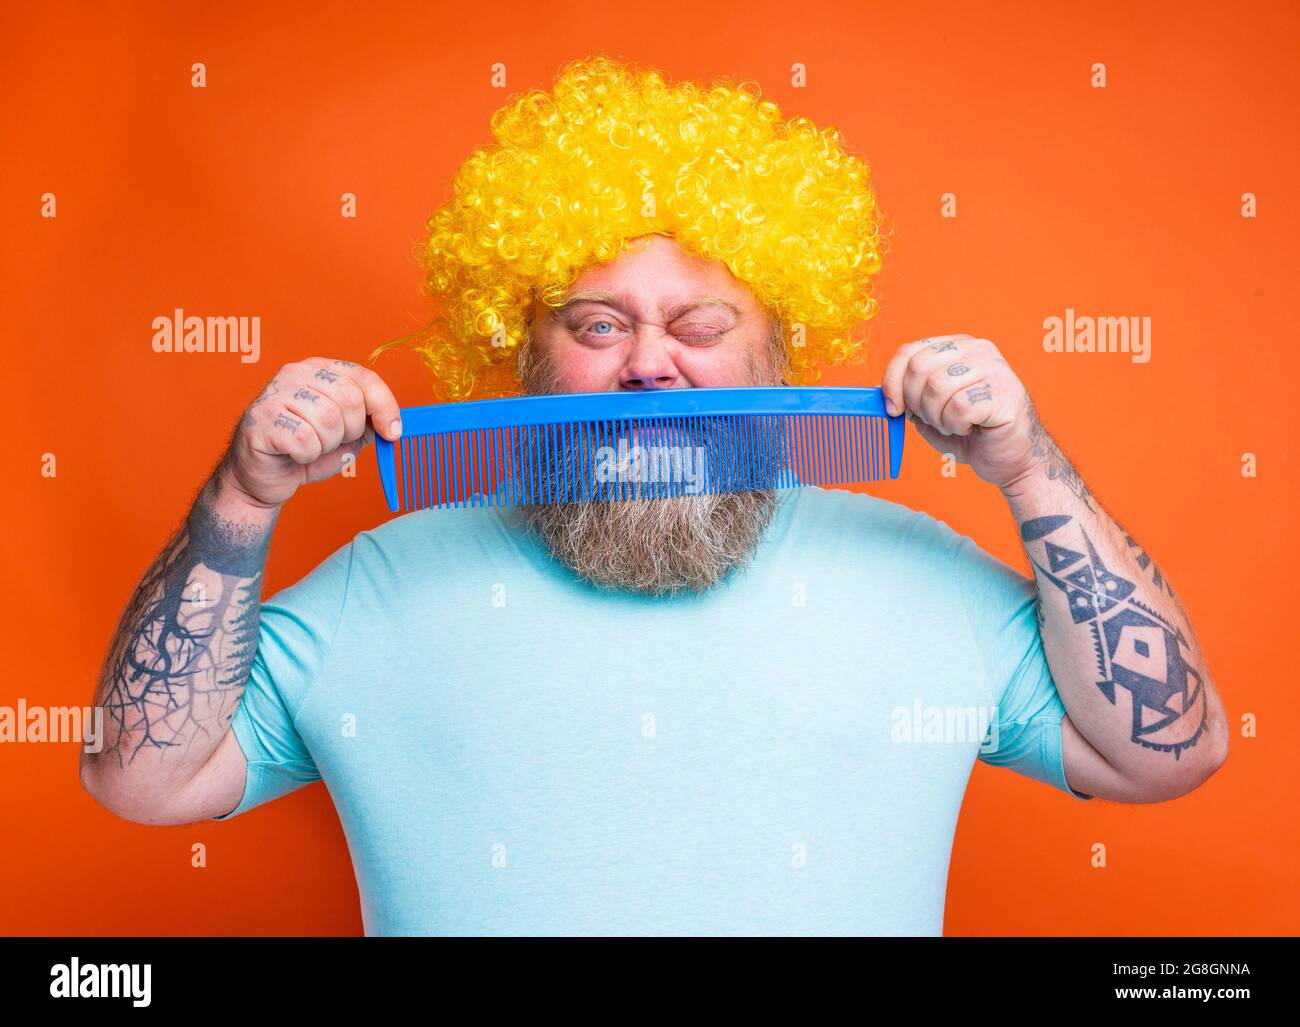 Gros douter homme avec la barbe, tatouages et lunettes de soleil se peignes  avec un peigne géant Photo Stock - Alamy